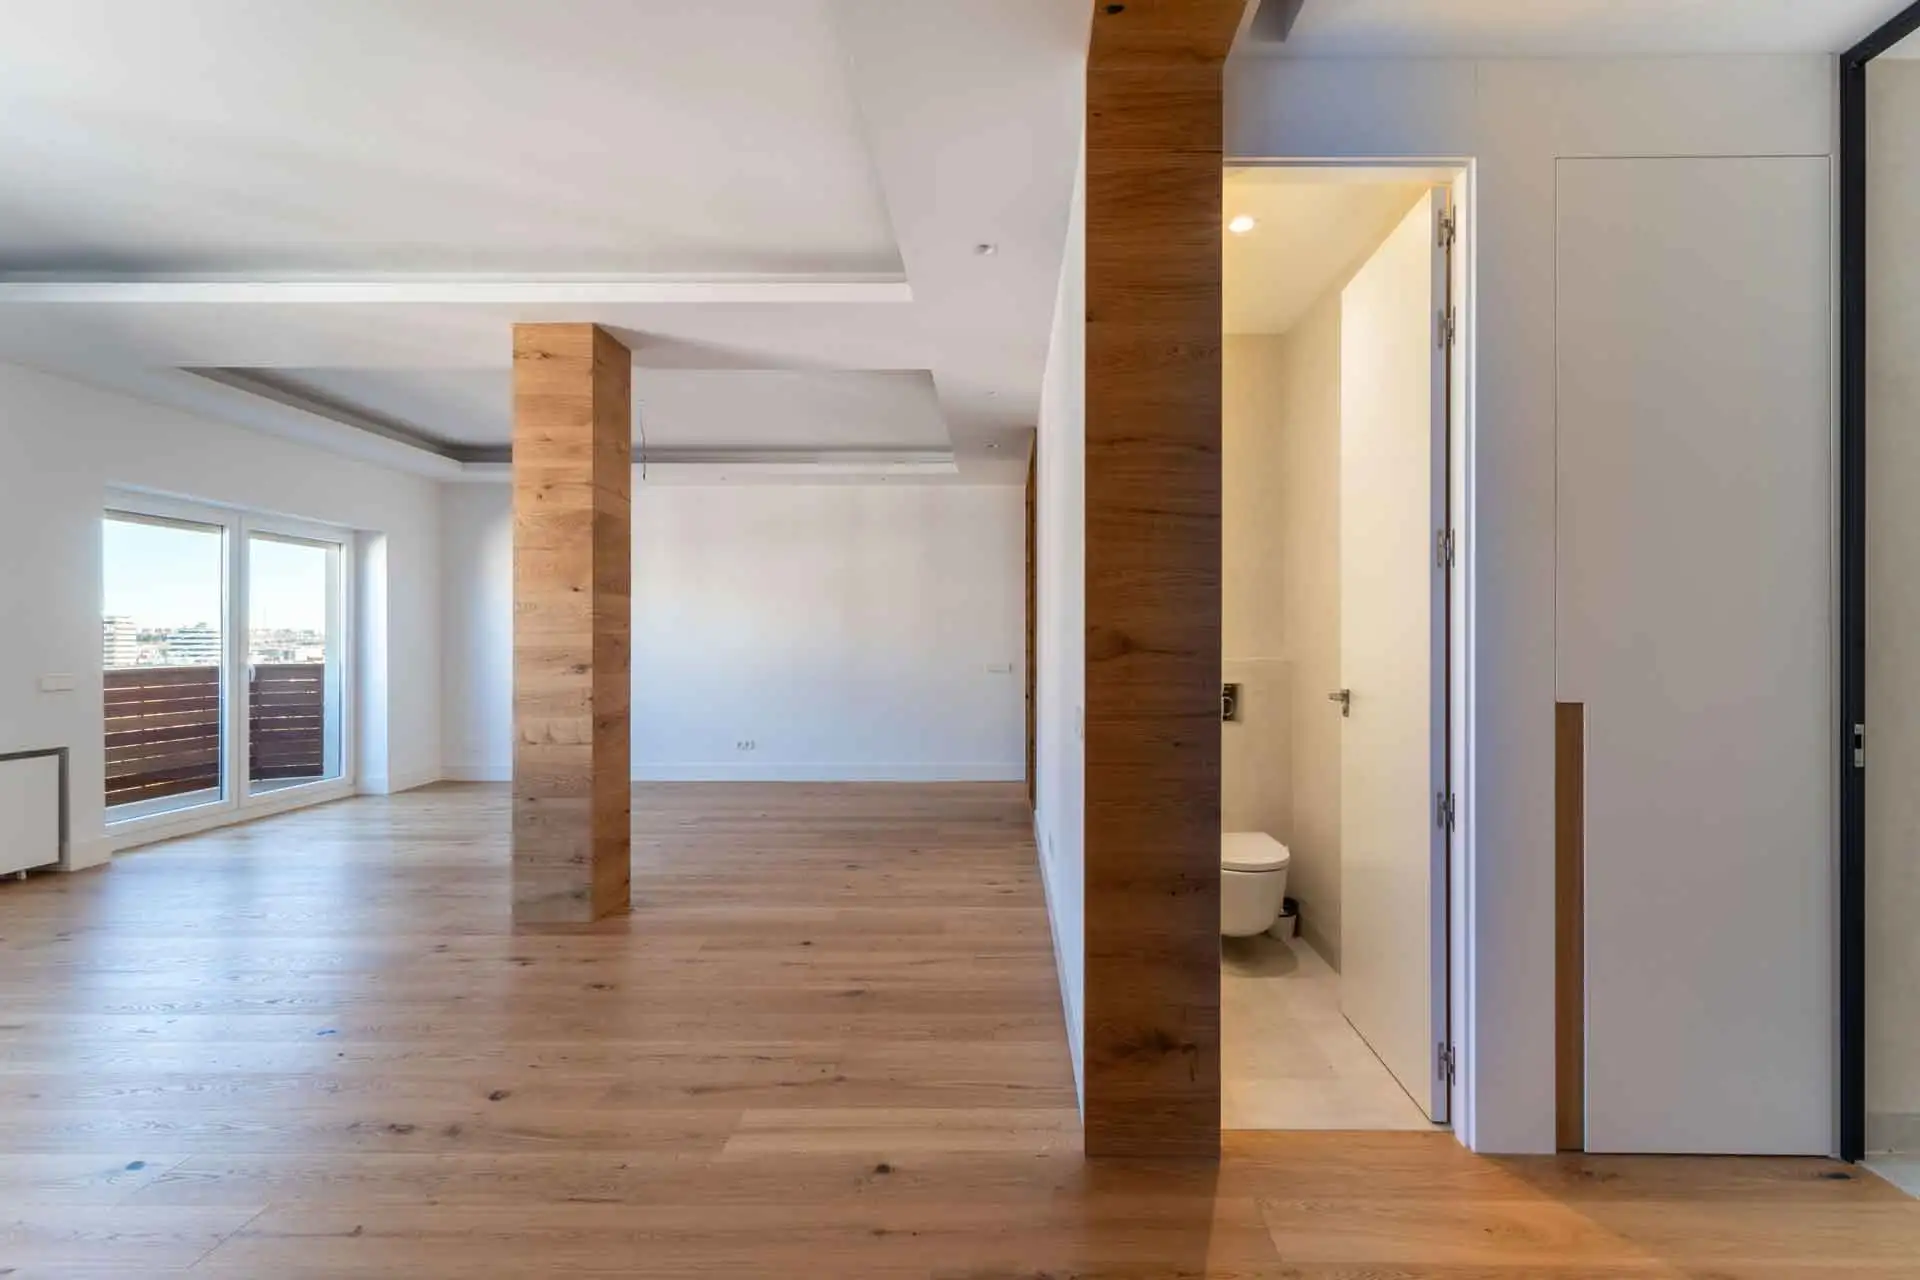 amplio salón con viga forrada en madera y cuarto de baño con puerta abierta